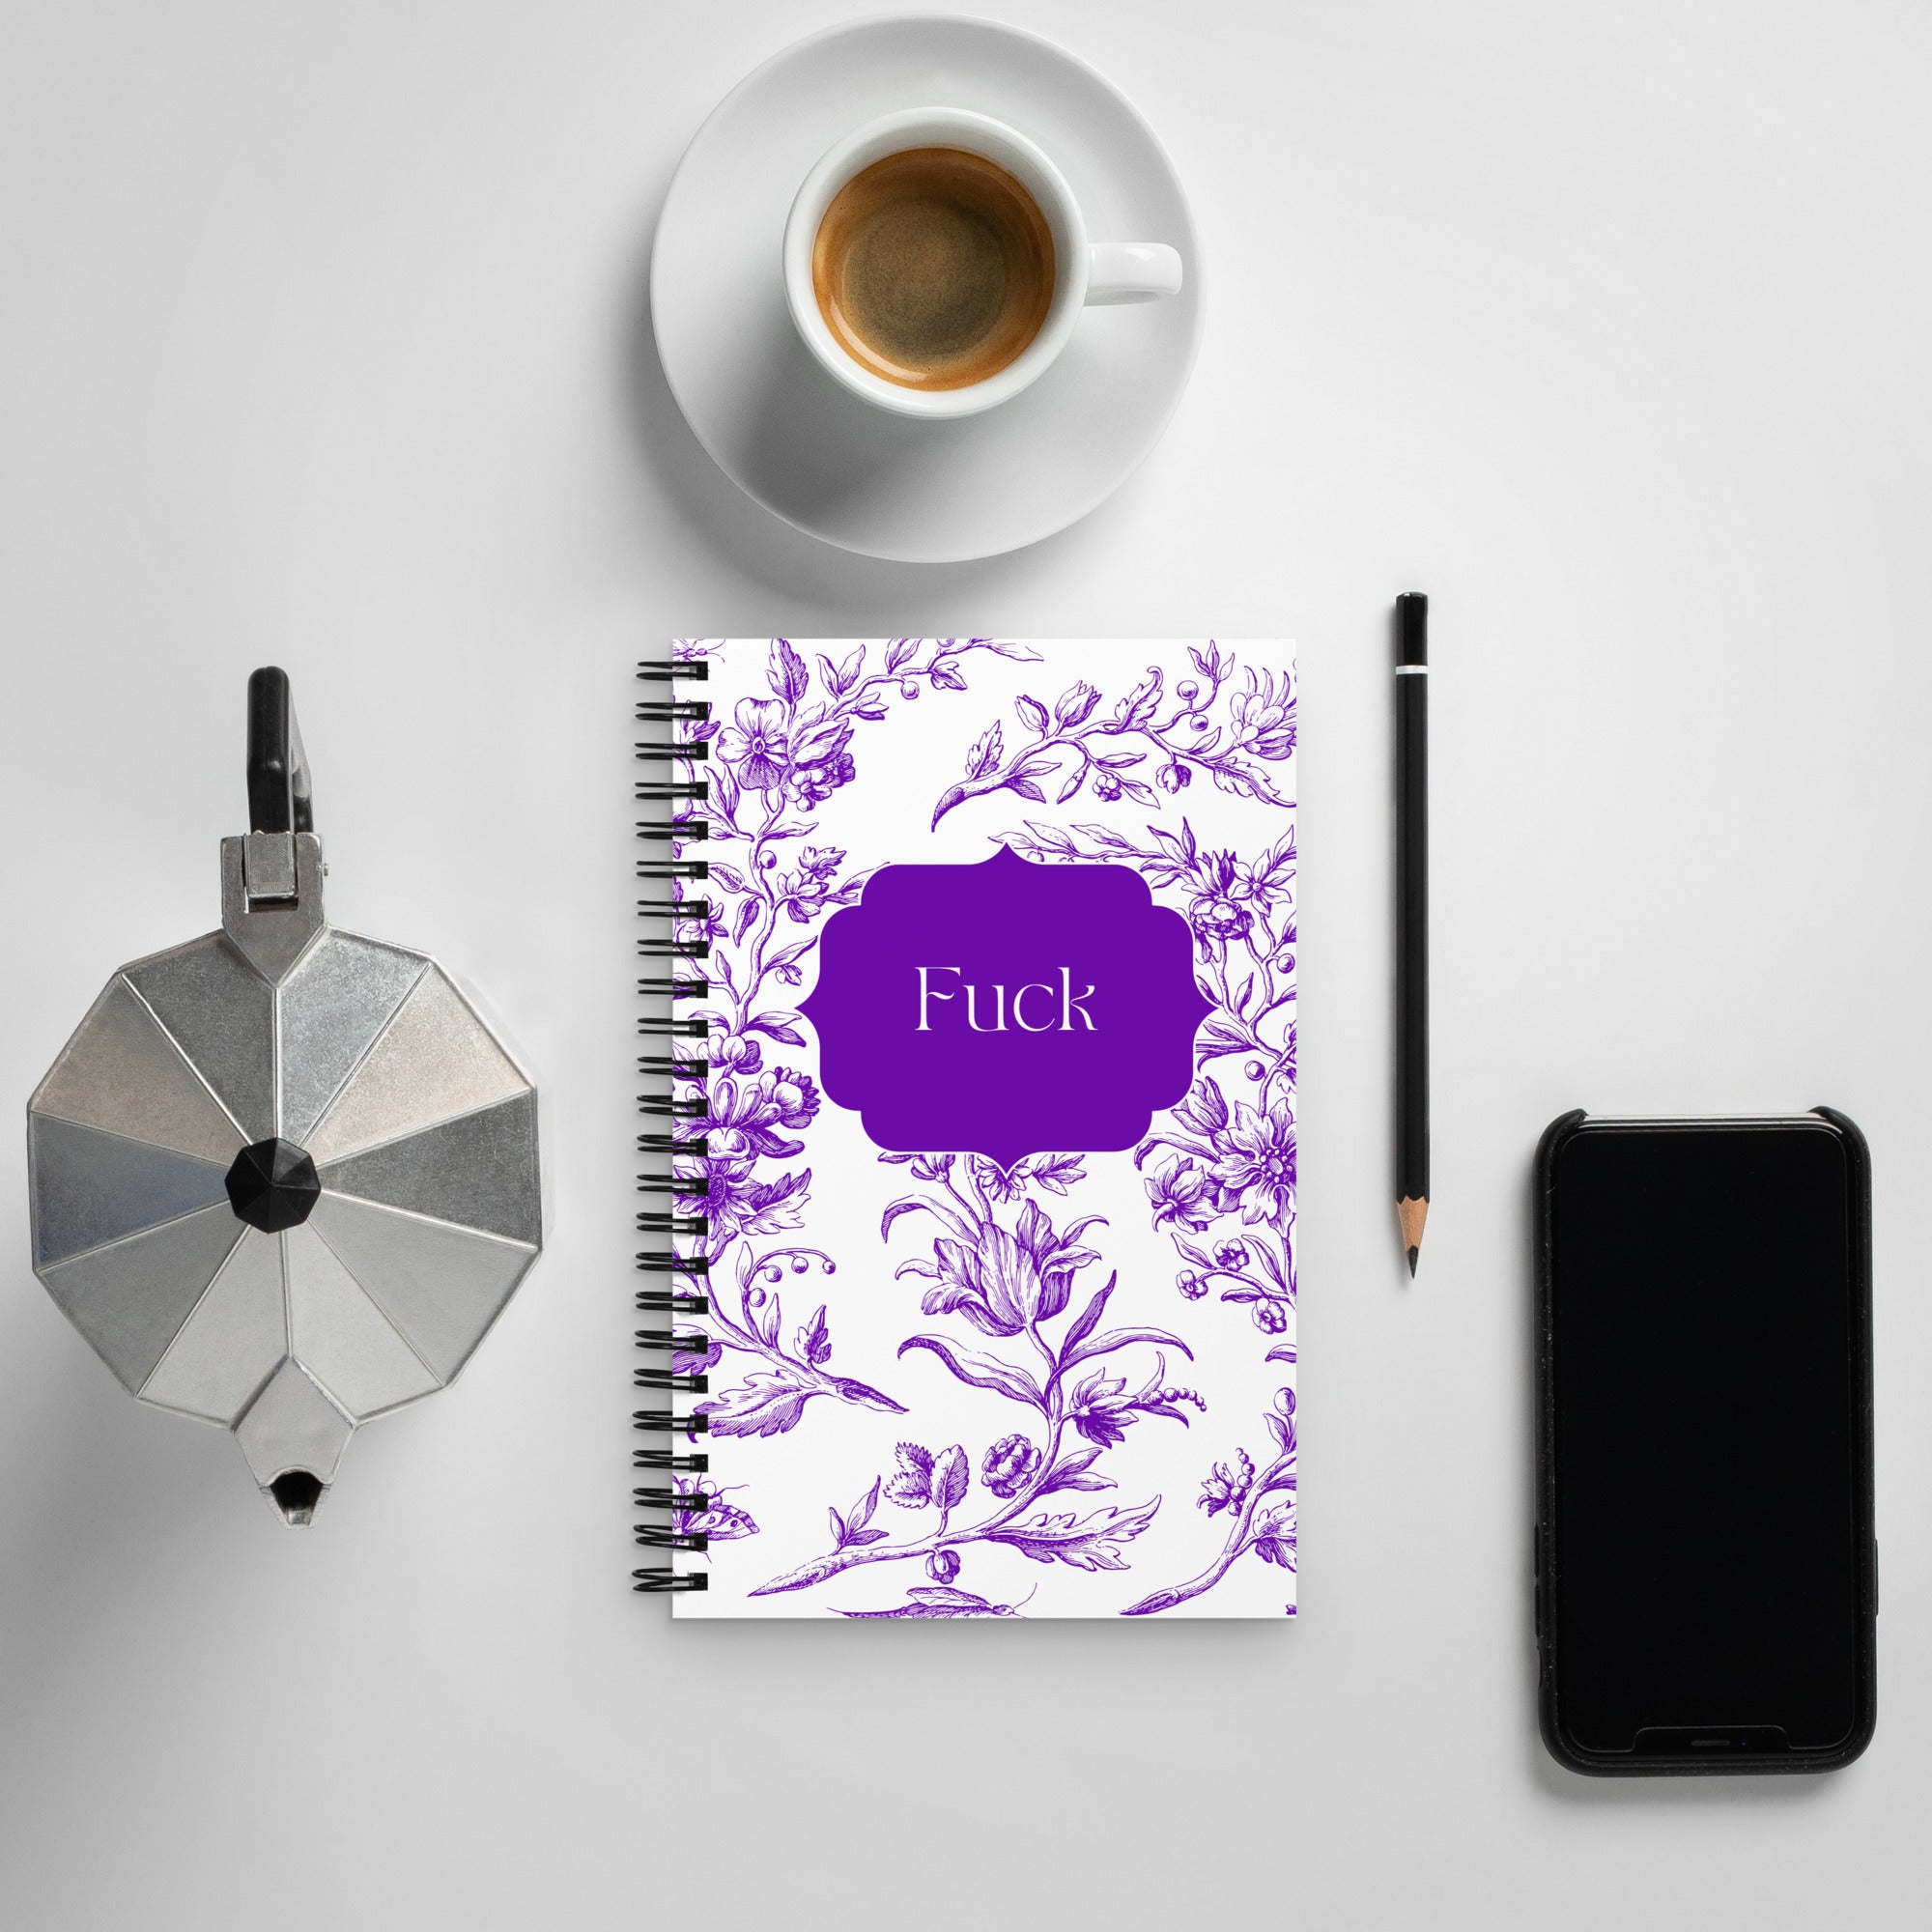 Fuck - Spiral Notebook